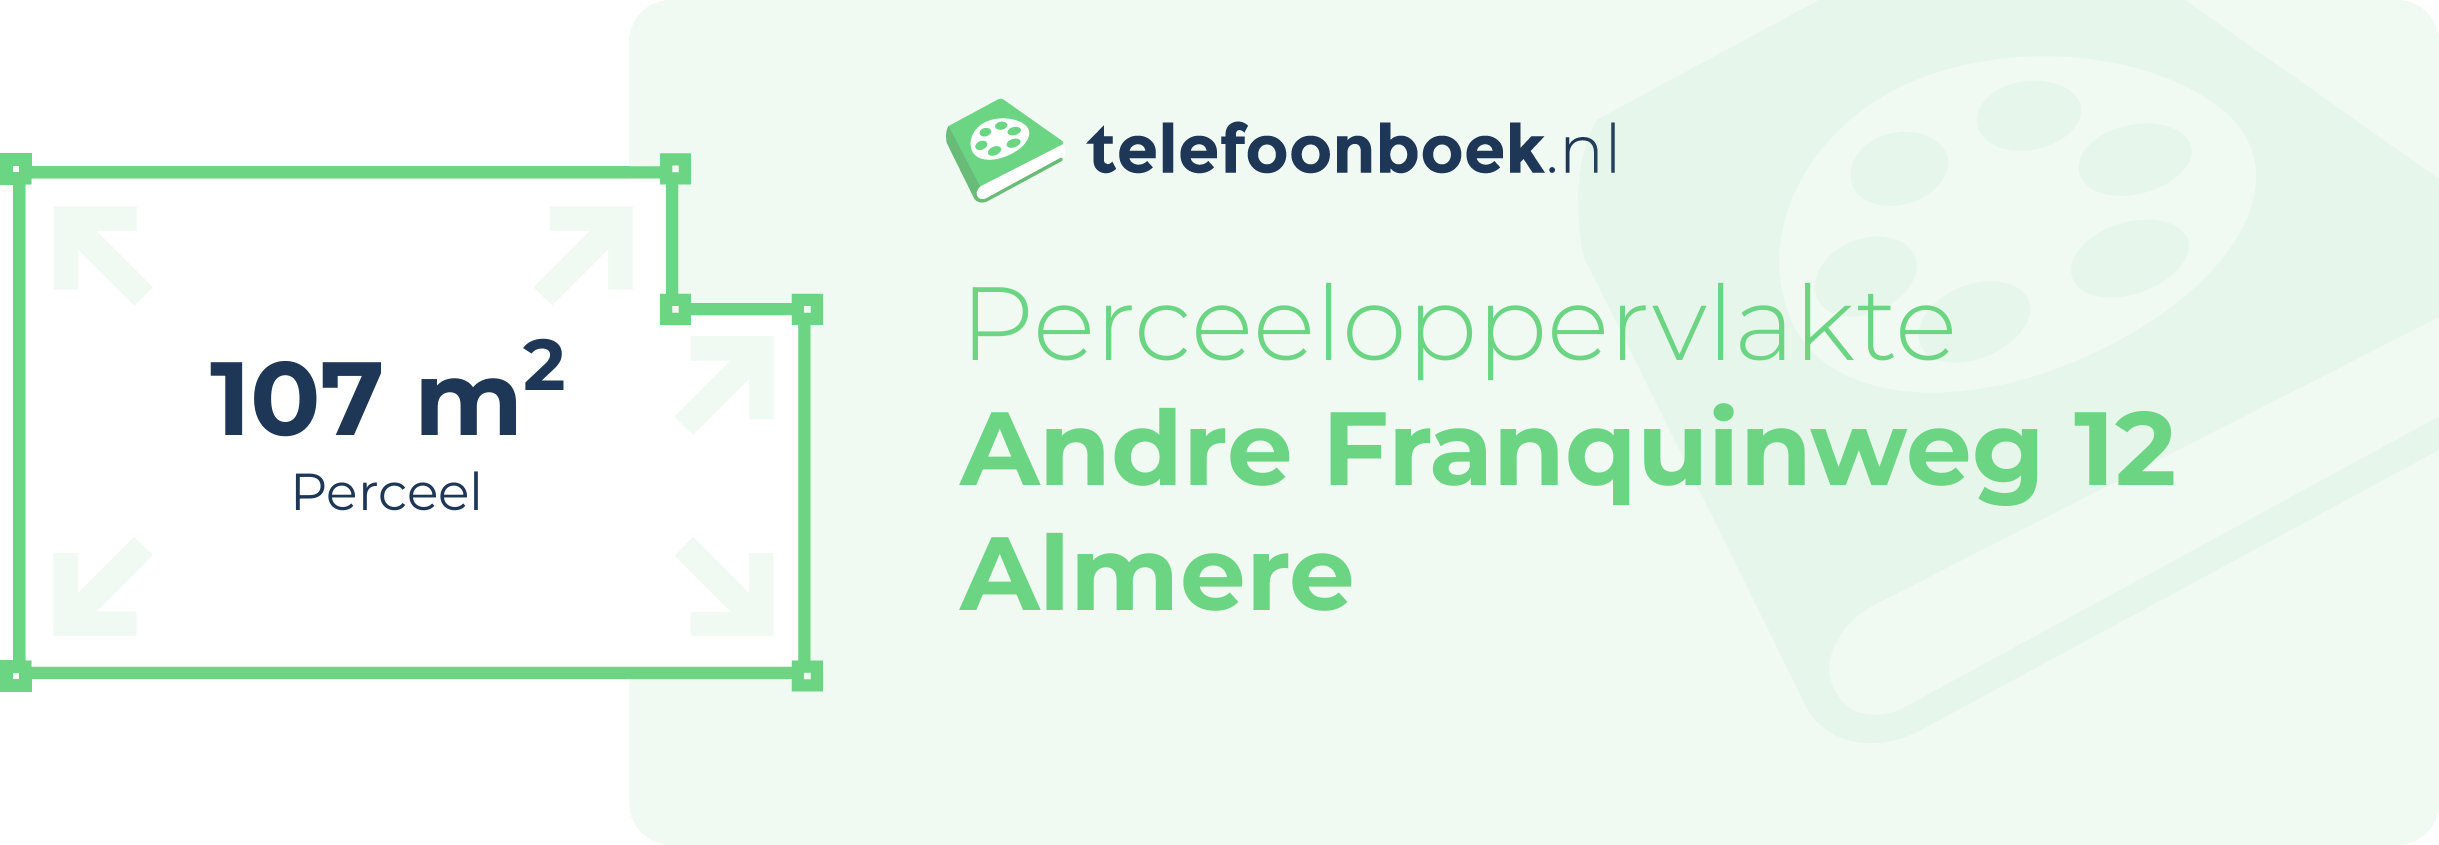 Perceeloppervlakte Andre Franquinweg 12 Almere